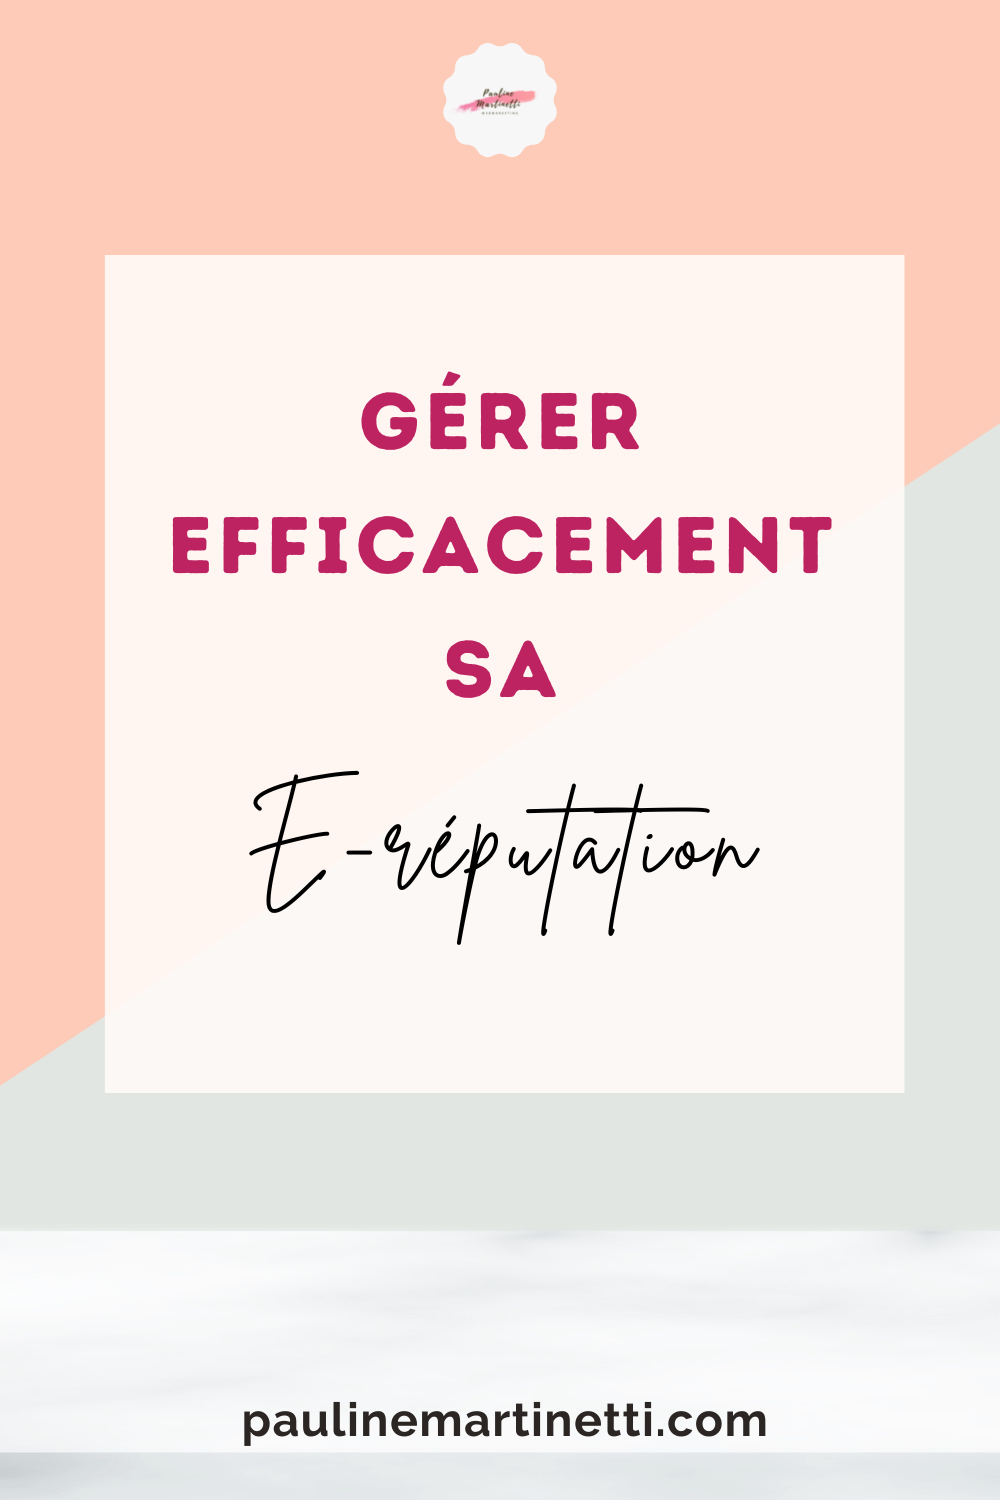 gerer-ereputation-pin